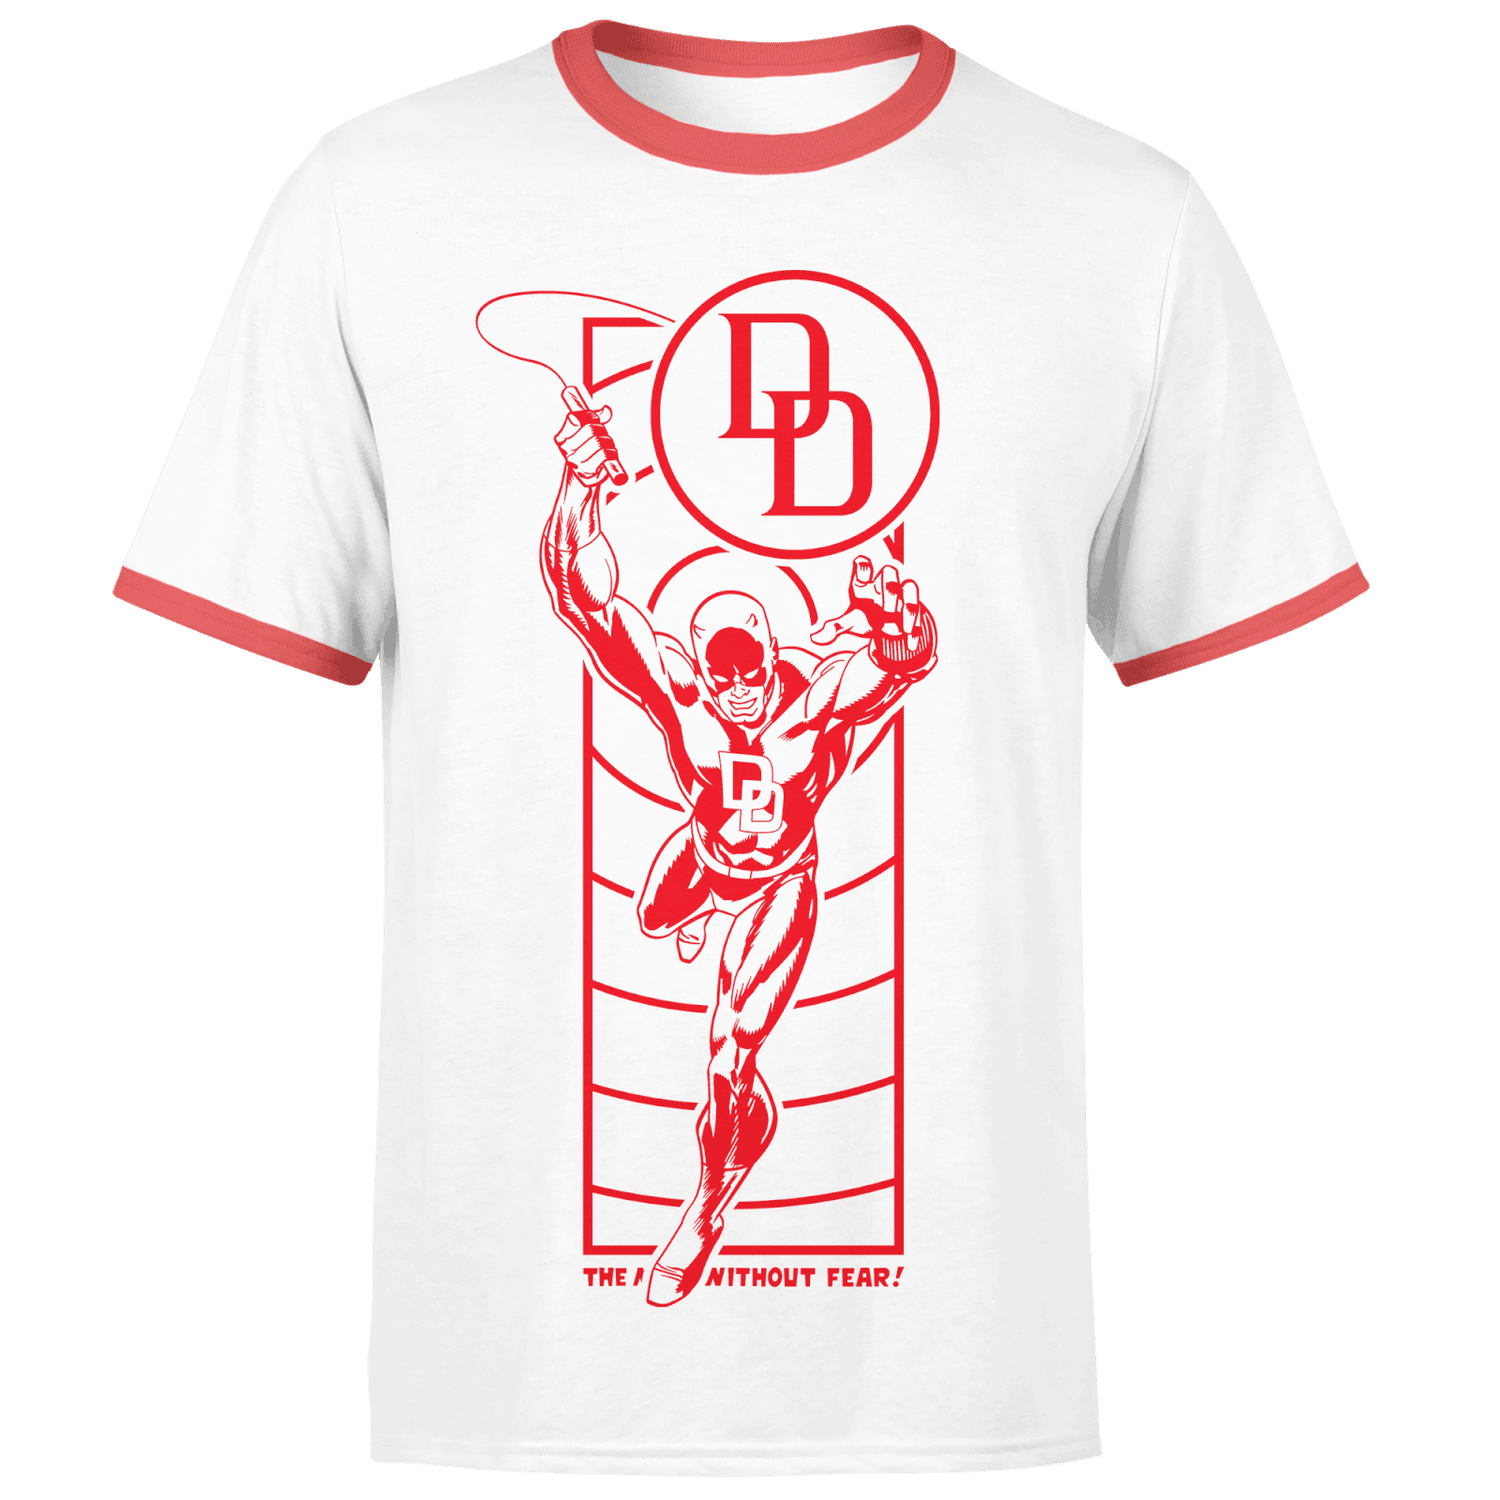 Marvel Daredevil Senses Men's Ringer T-Shirt - White/Red